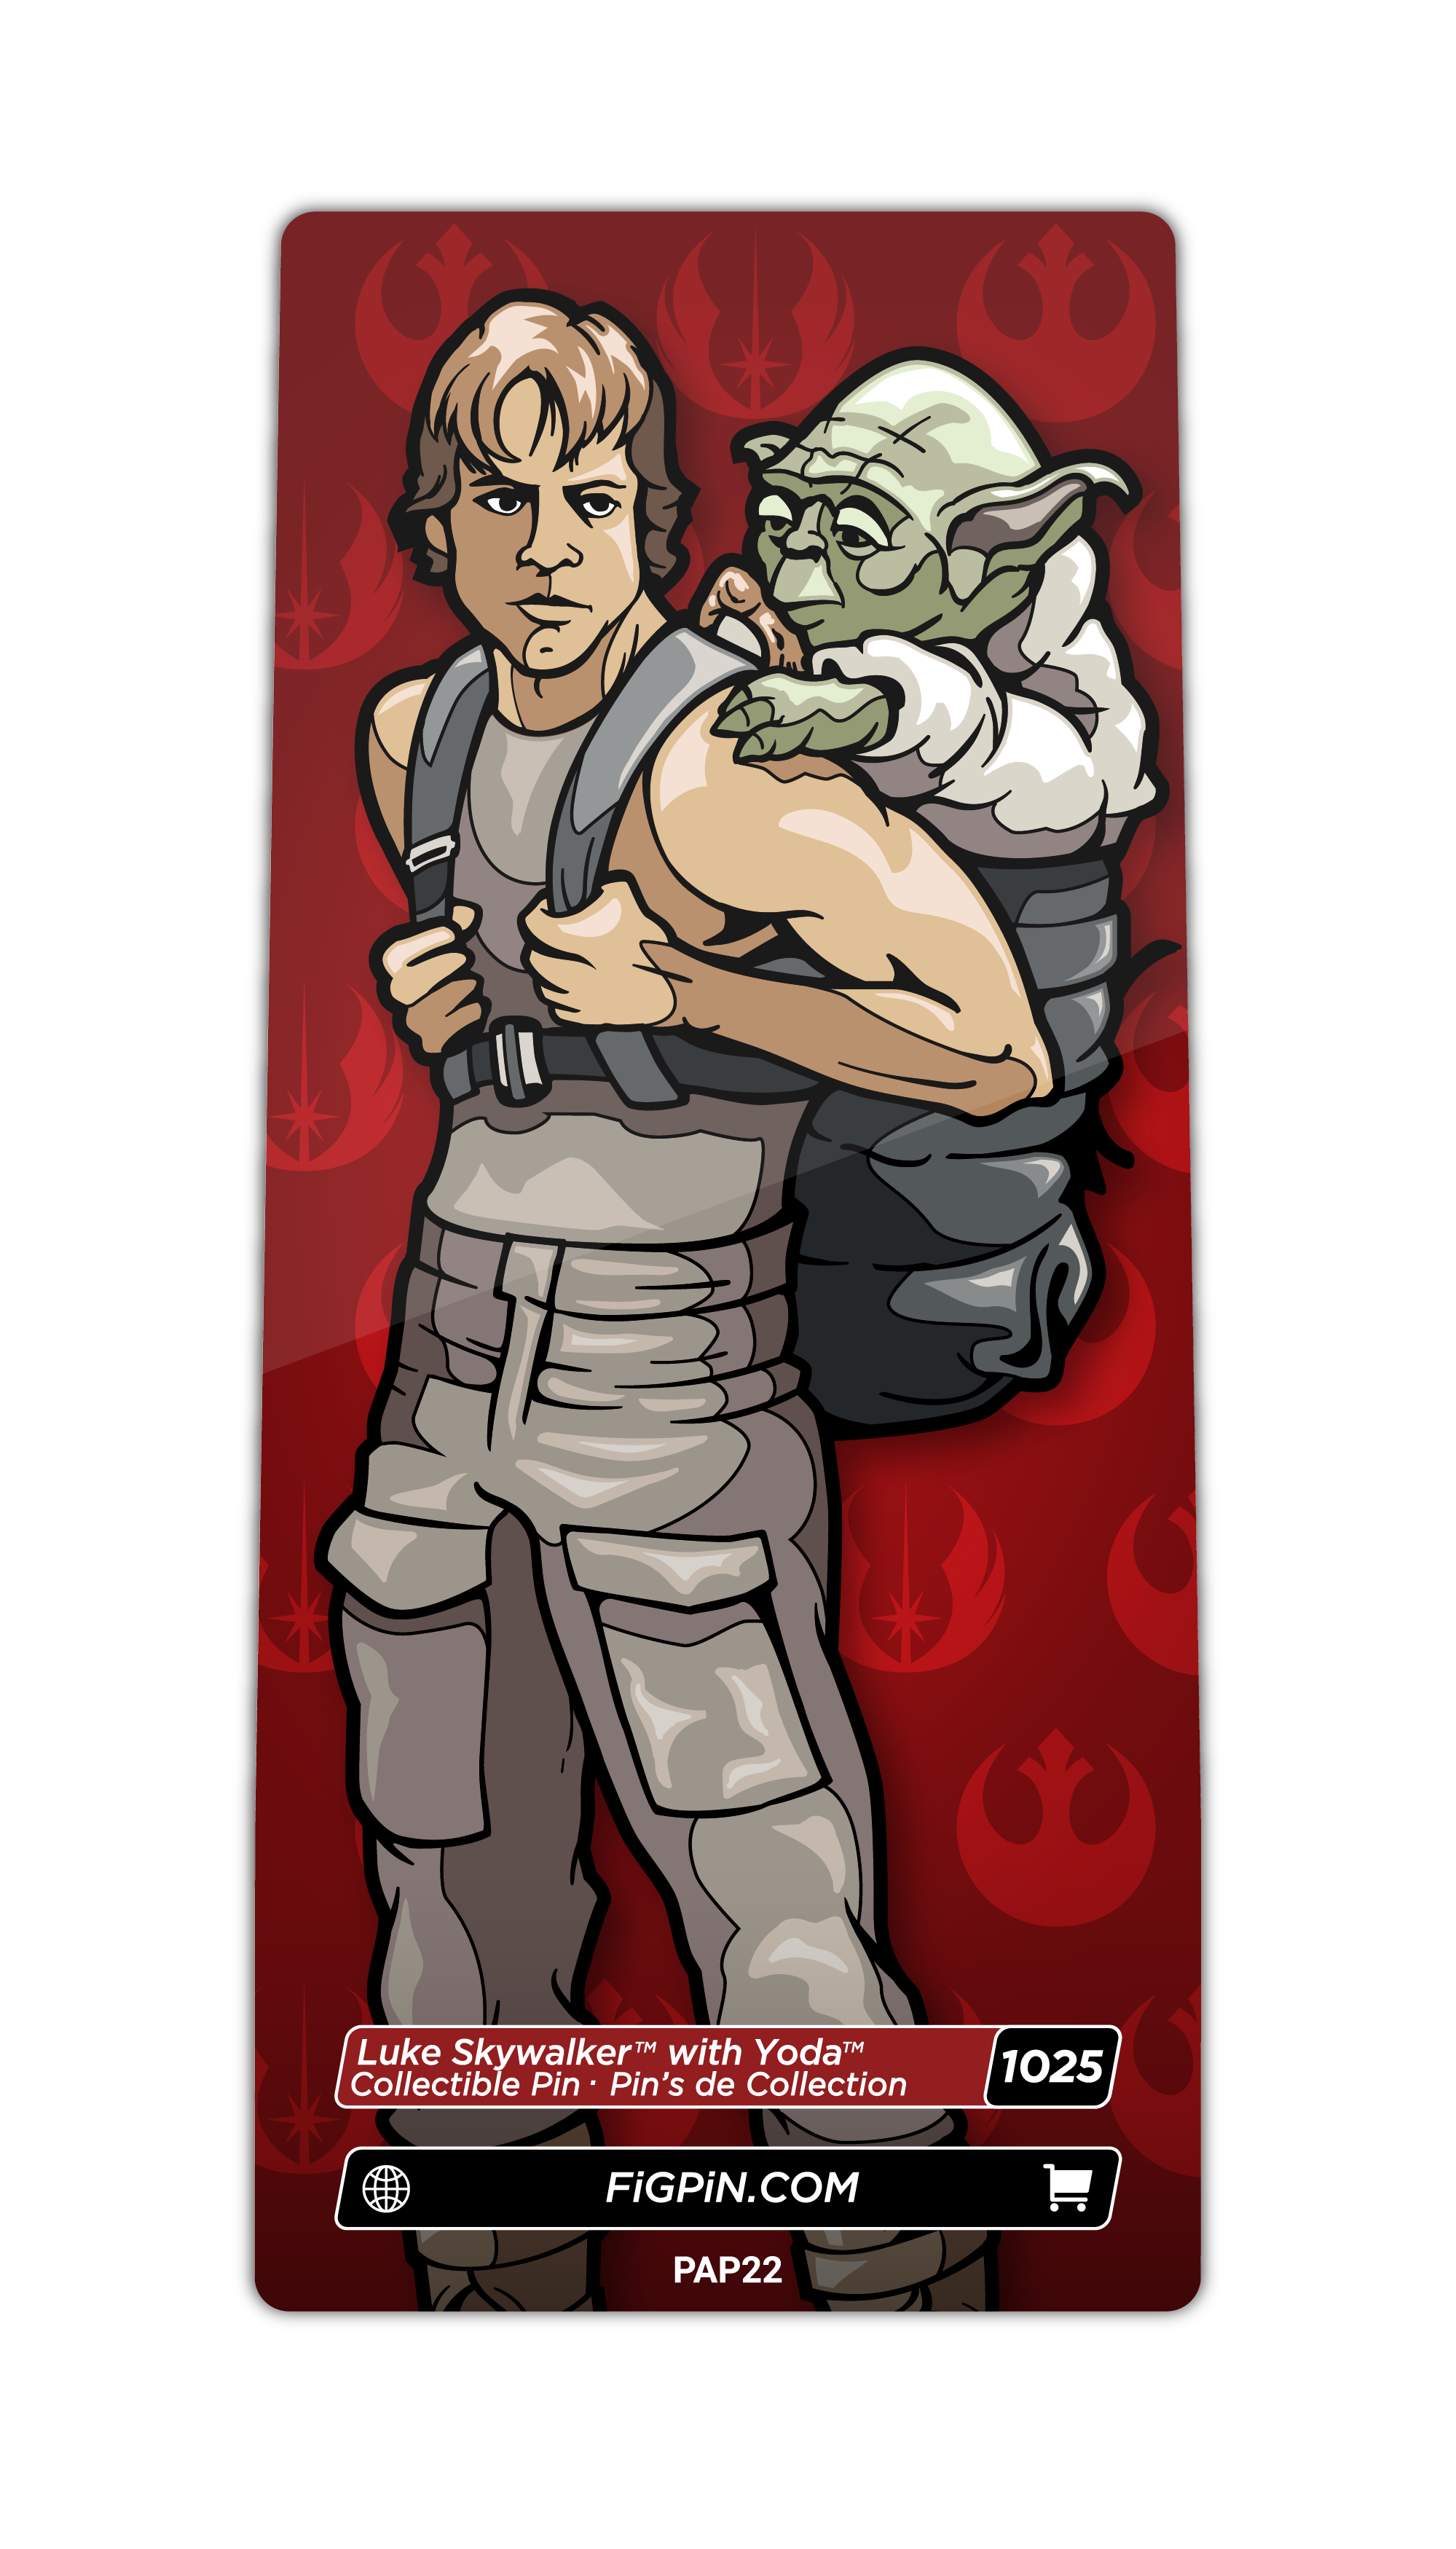 Luke Skywalker with Yoda (1025)